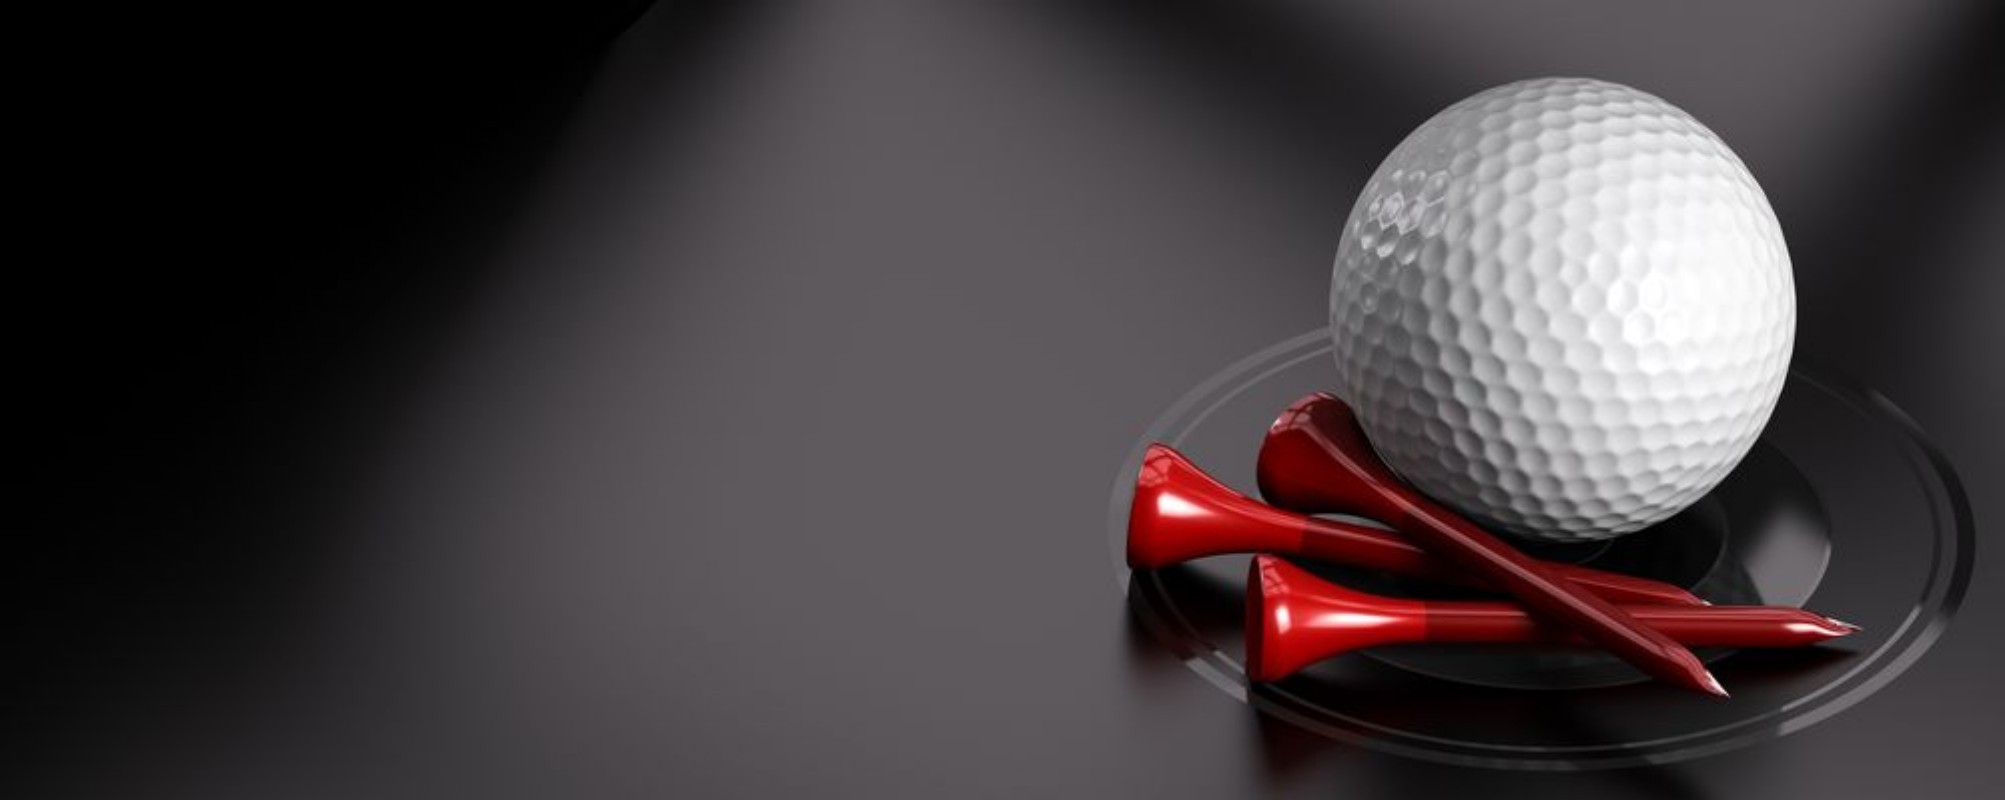 Image de Golf Ball and Tee